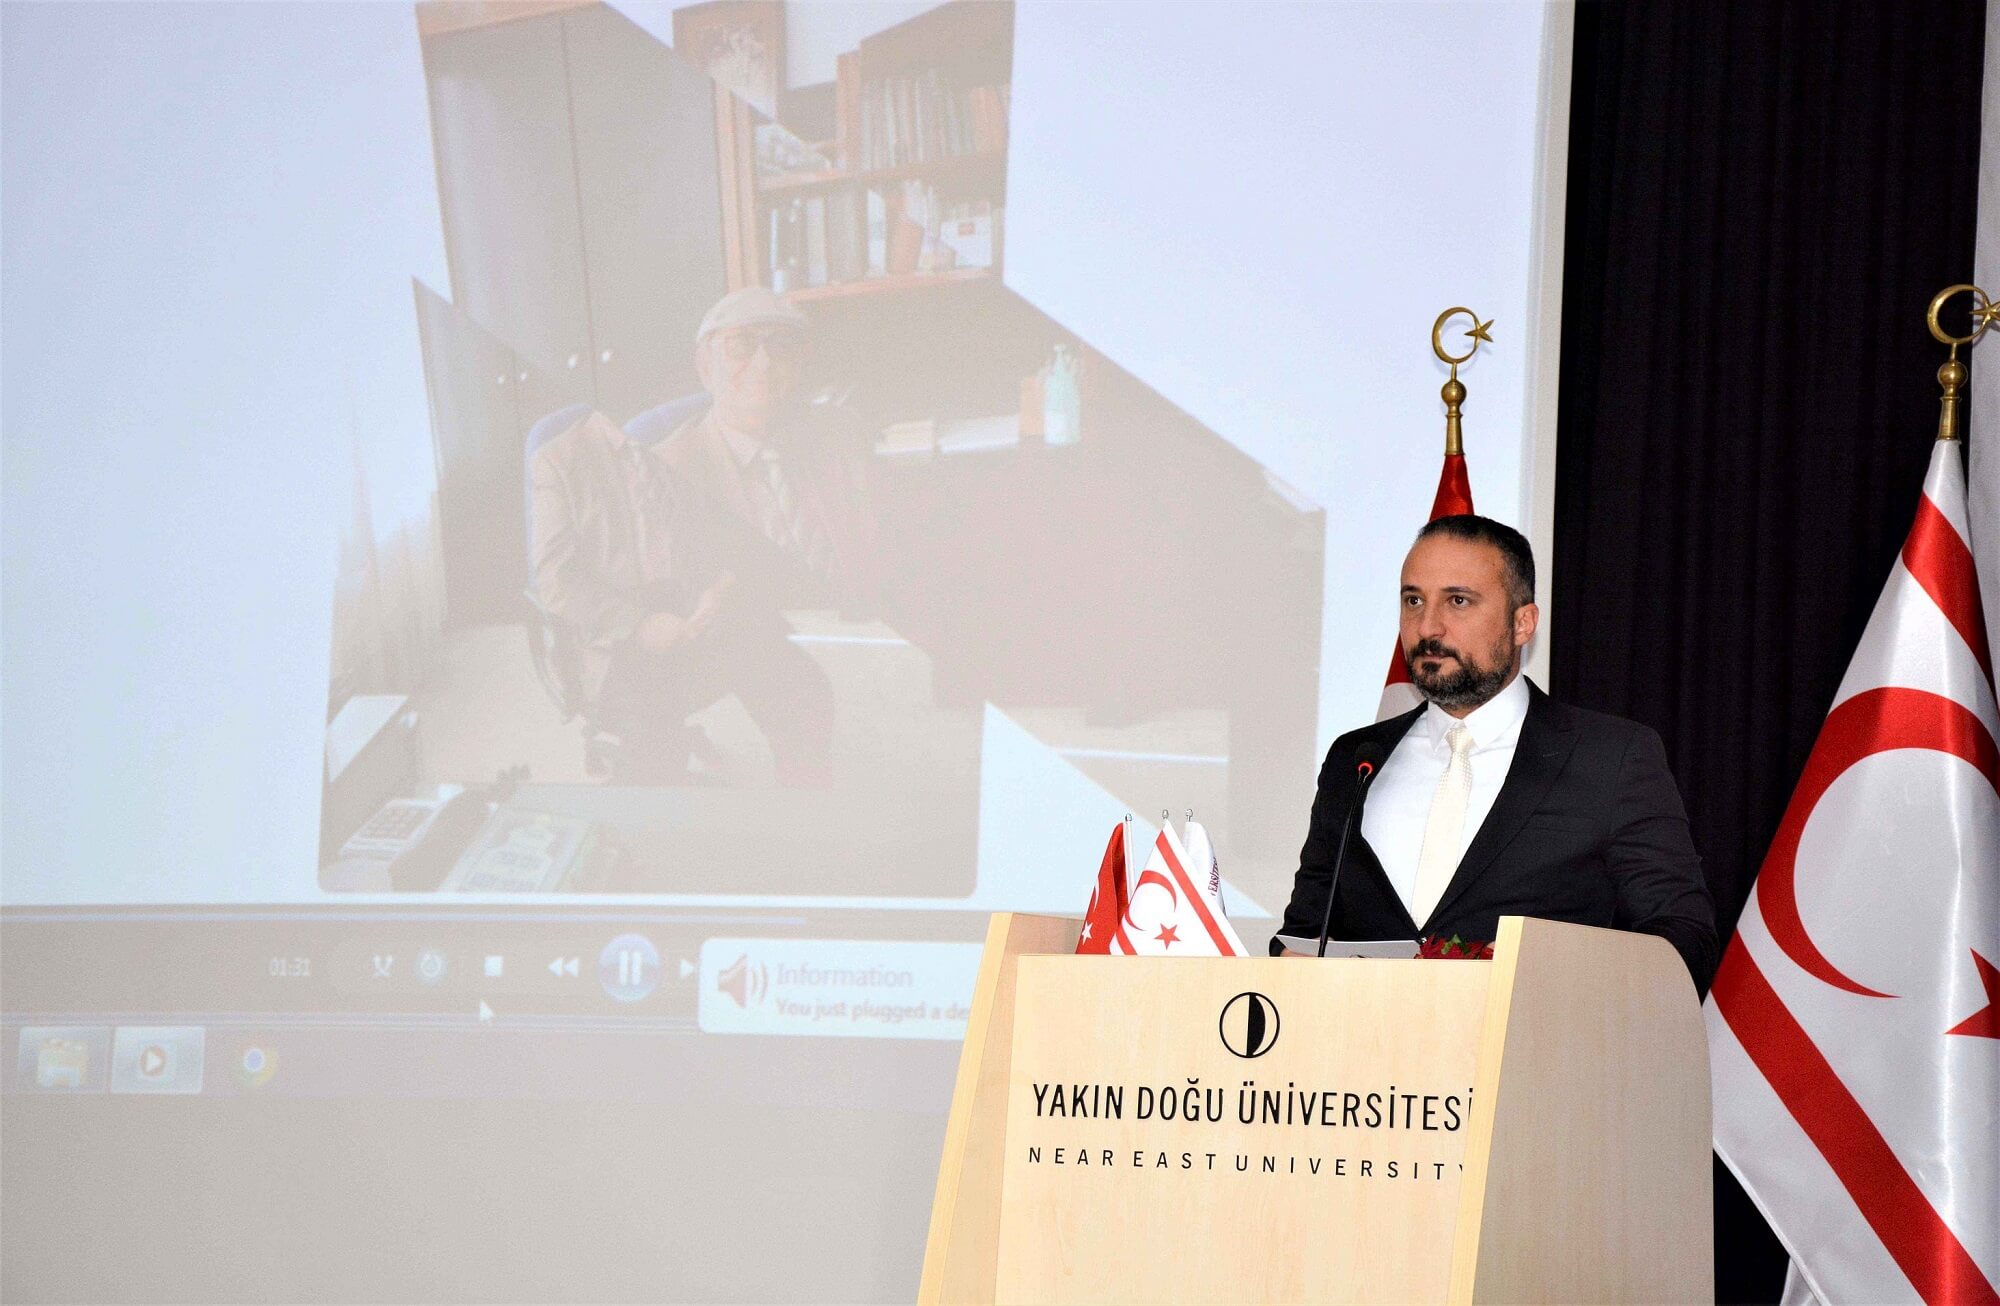 Kıbrıs Modern Sanat Müzesi’nin, Prof. Dr. Ümit Hassan Onuruna Düzenlediği 2021’in İlk Sergisi, Yakın Doğu Üniversitesi Büyük Kütüphane Sergi Salonunda Açıldı